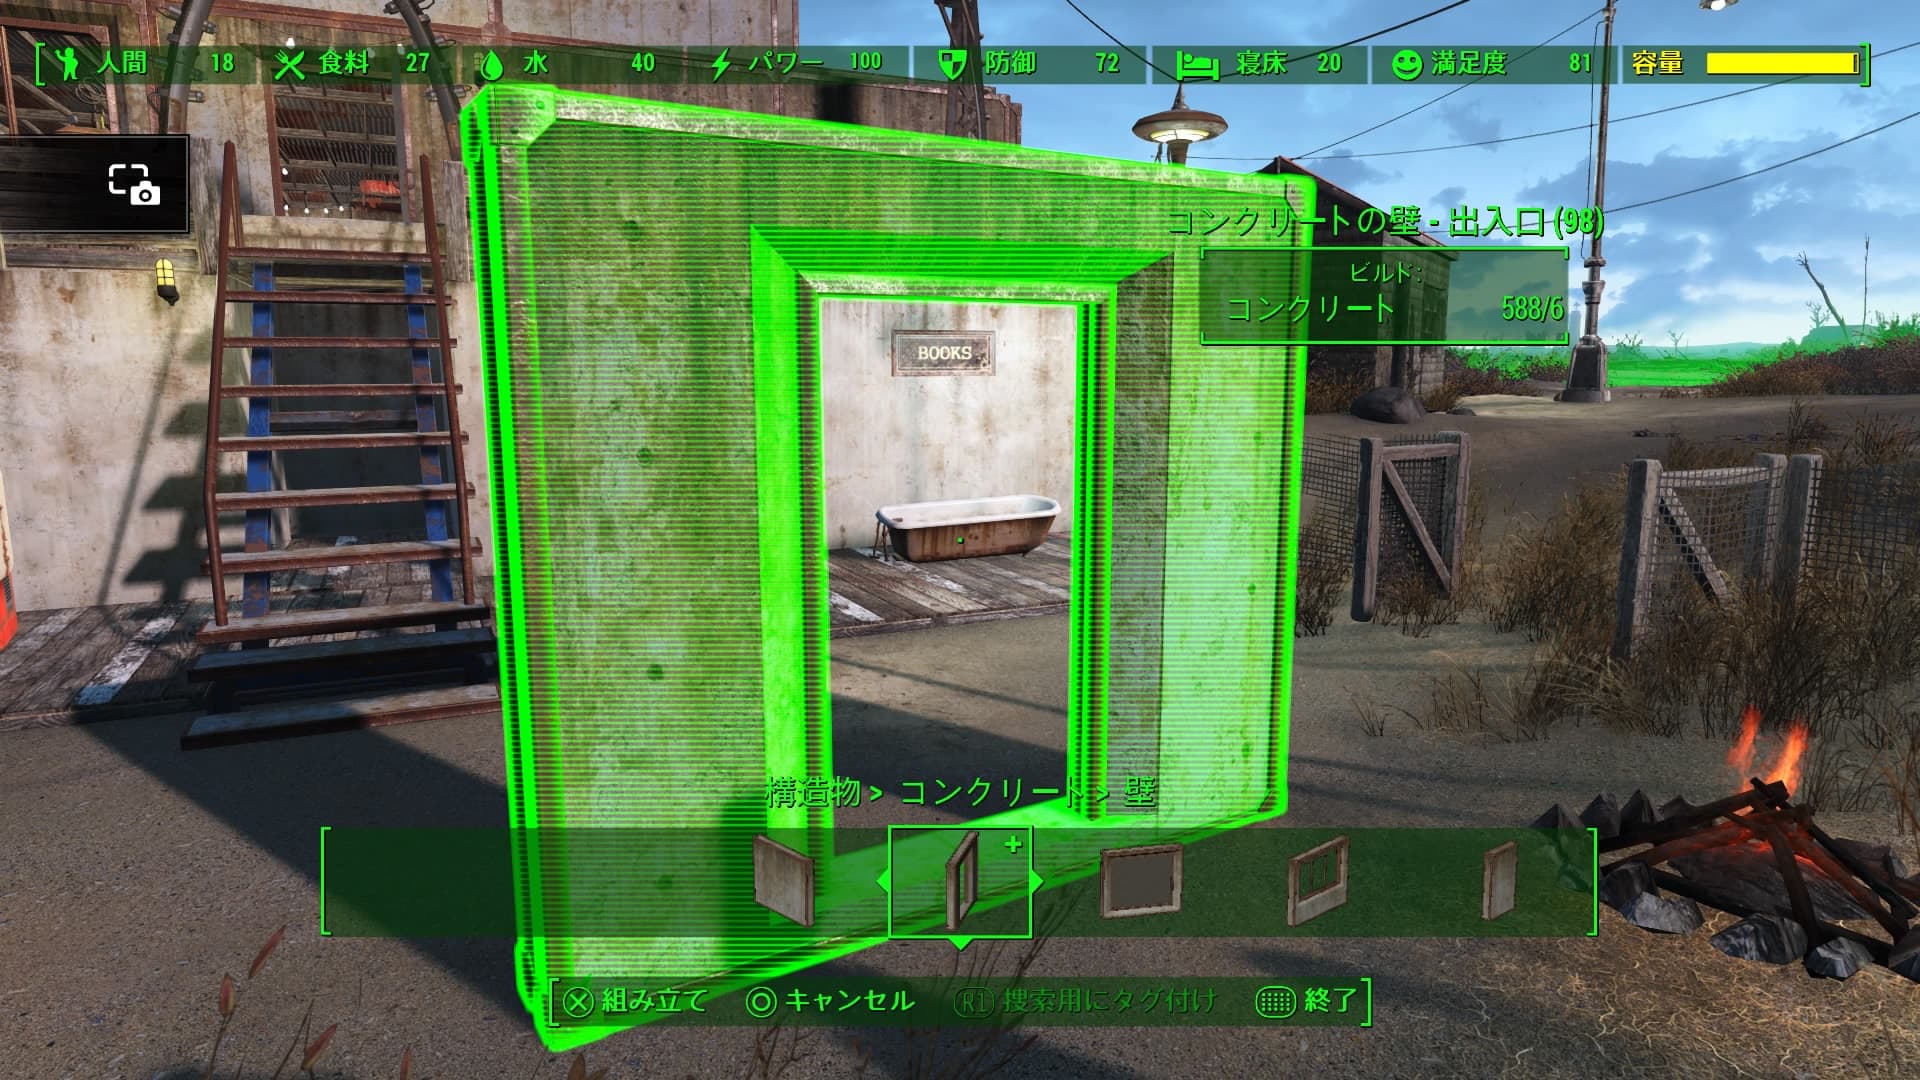 Fallout4 クラフト 街灯と窓と明るい照明がうれしい Dlc Wasteland Workshop で使えるアイテムが増えました あまげー